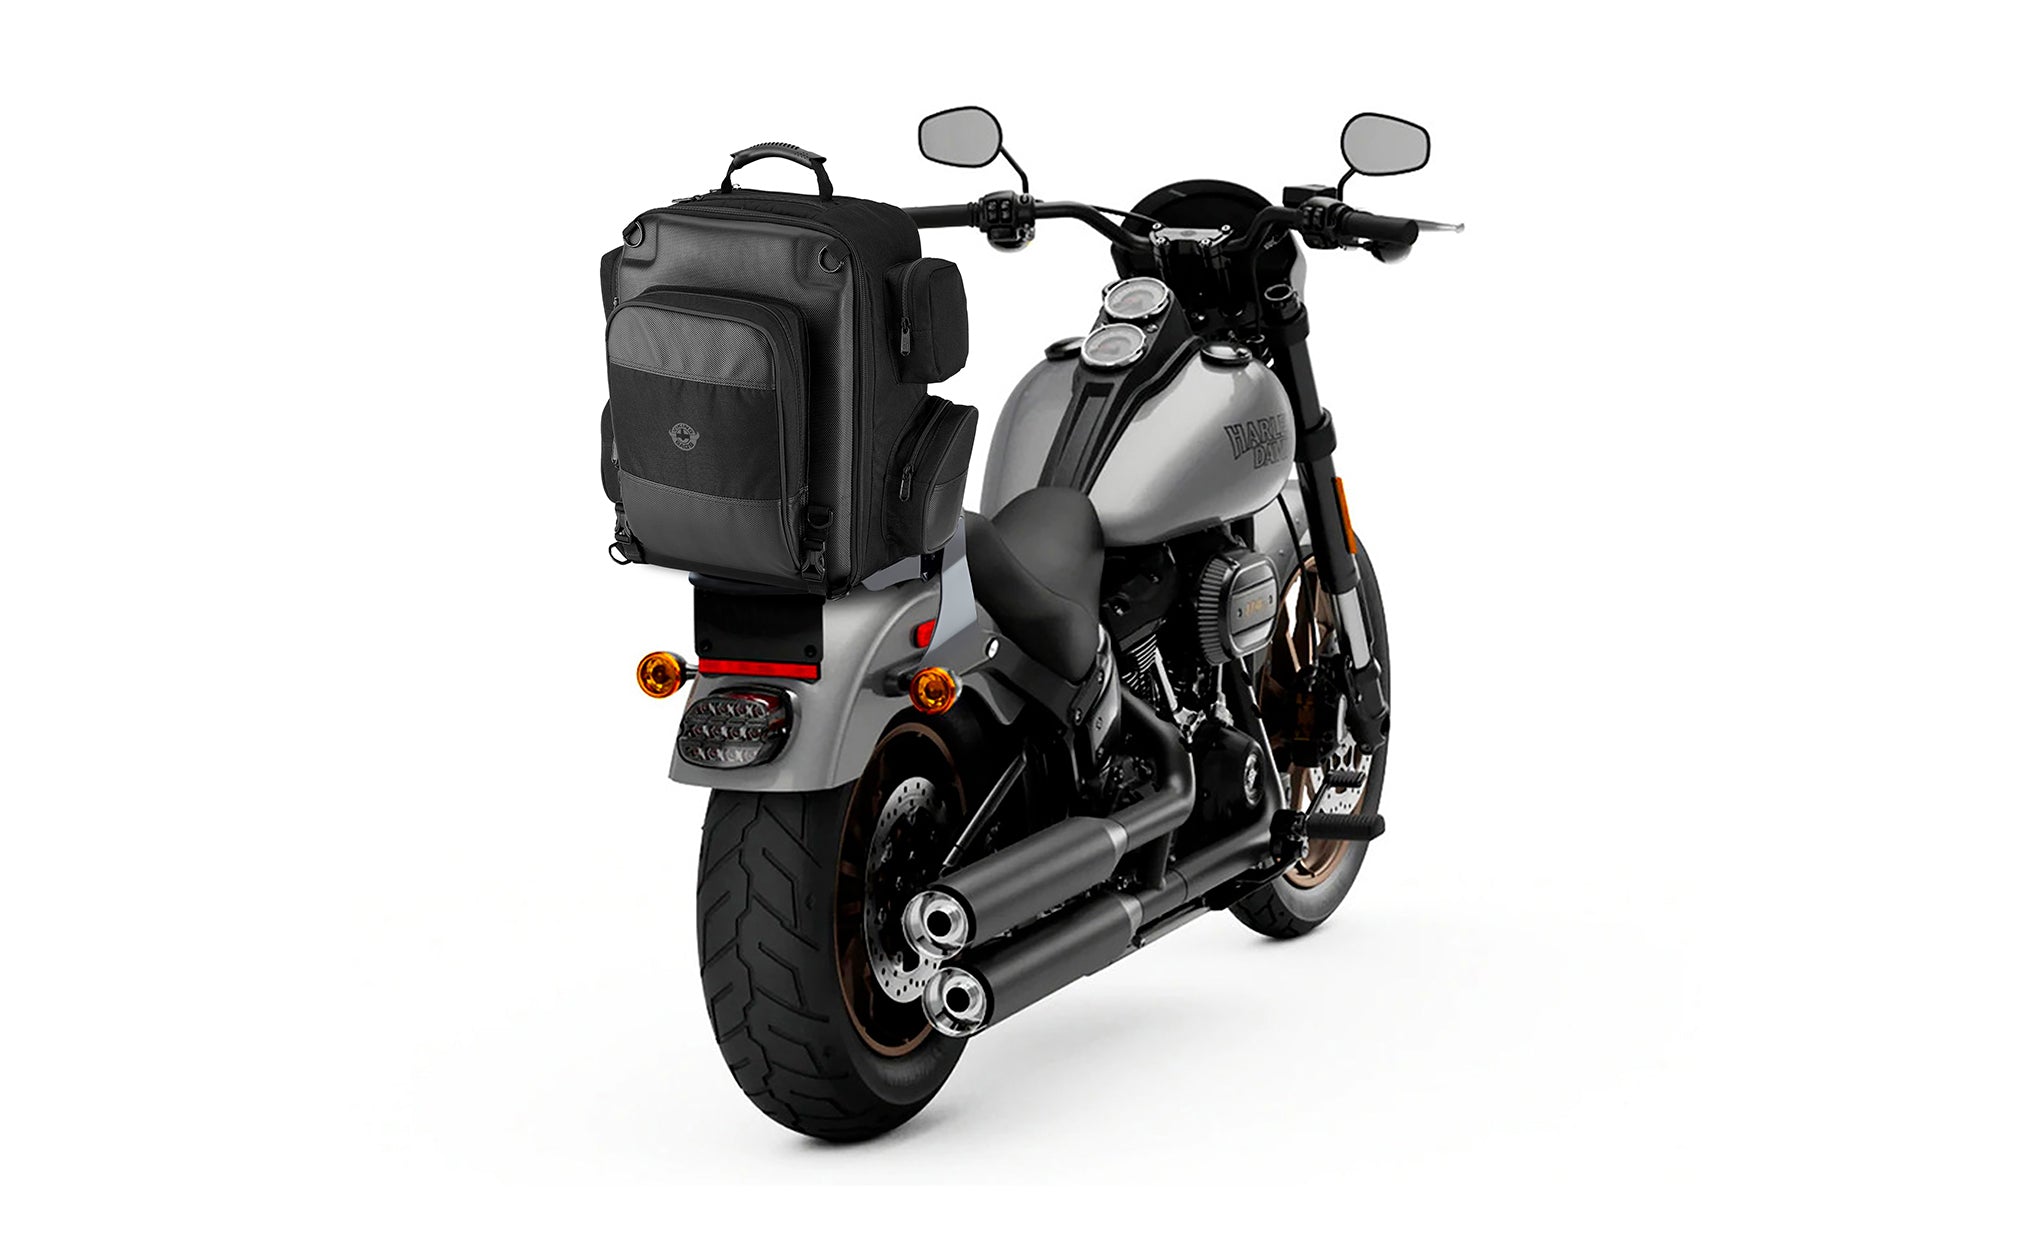 Viking Voyage Large Honda Motorcycle Tail Bag Bag on Bike View @expand